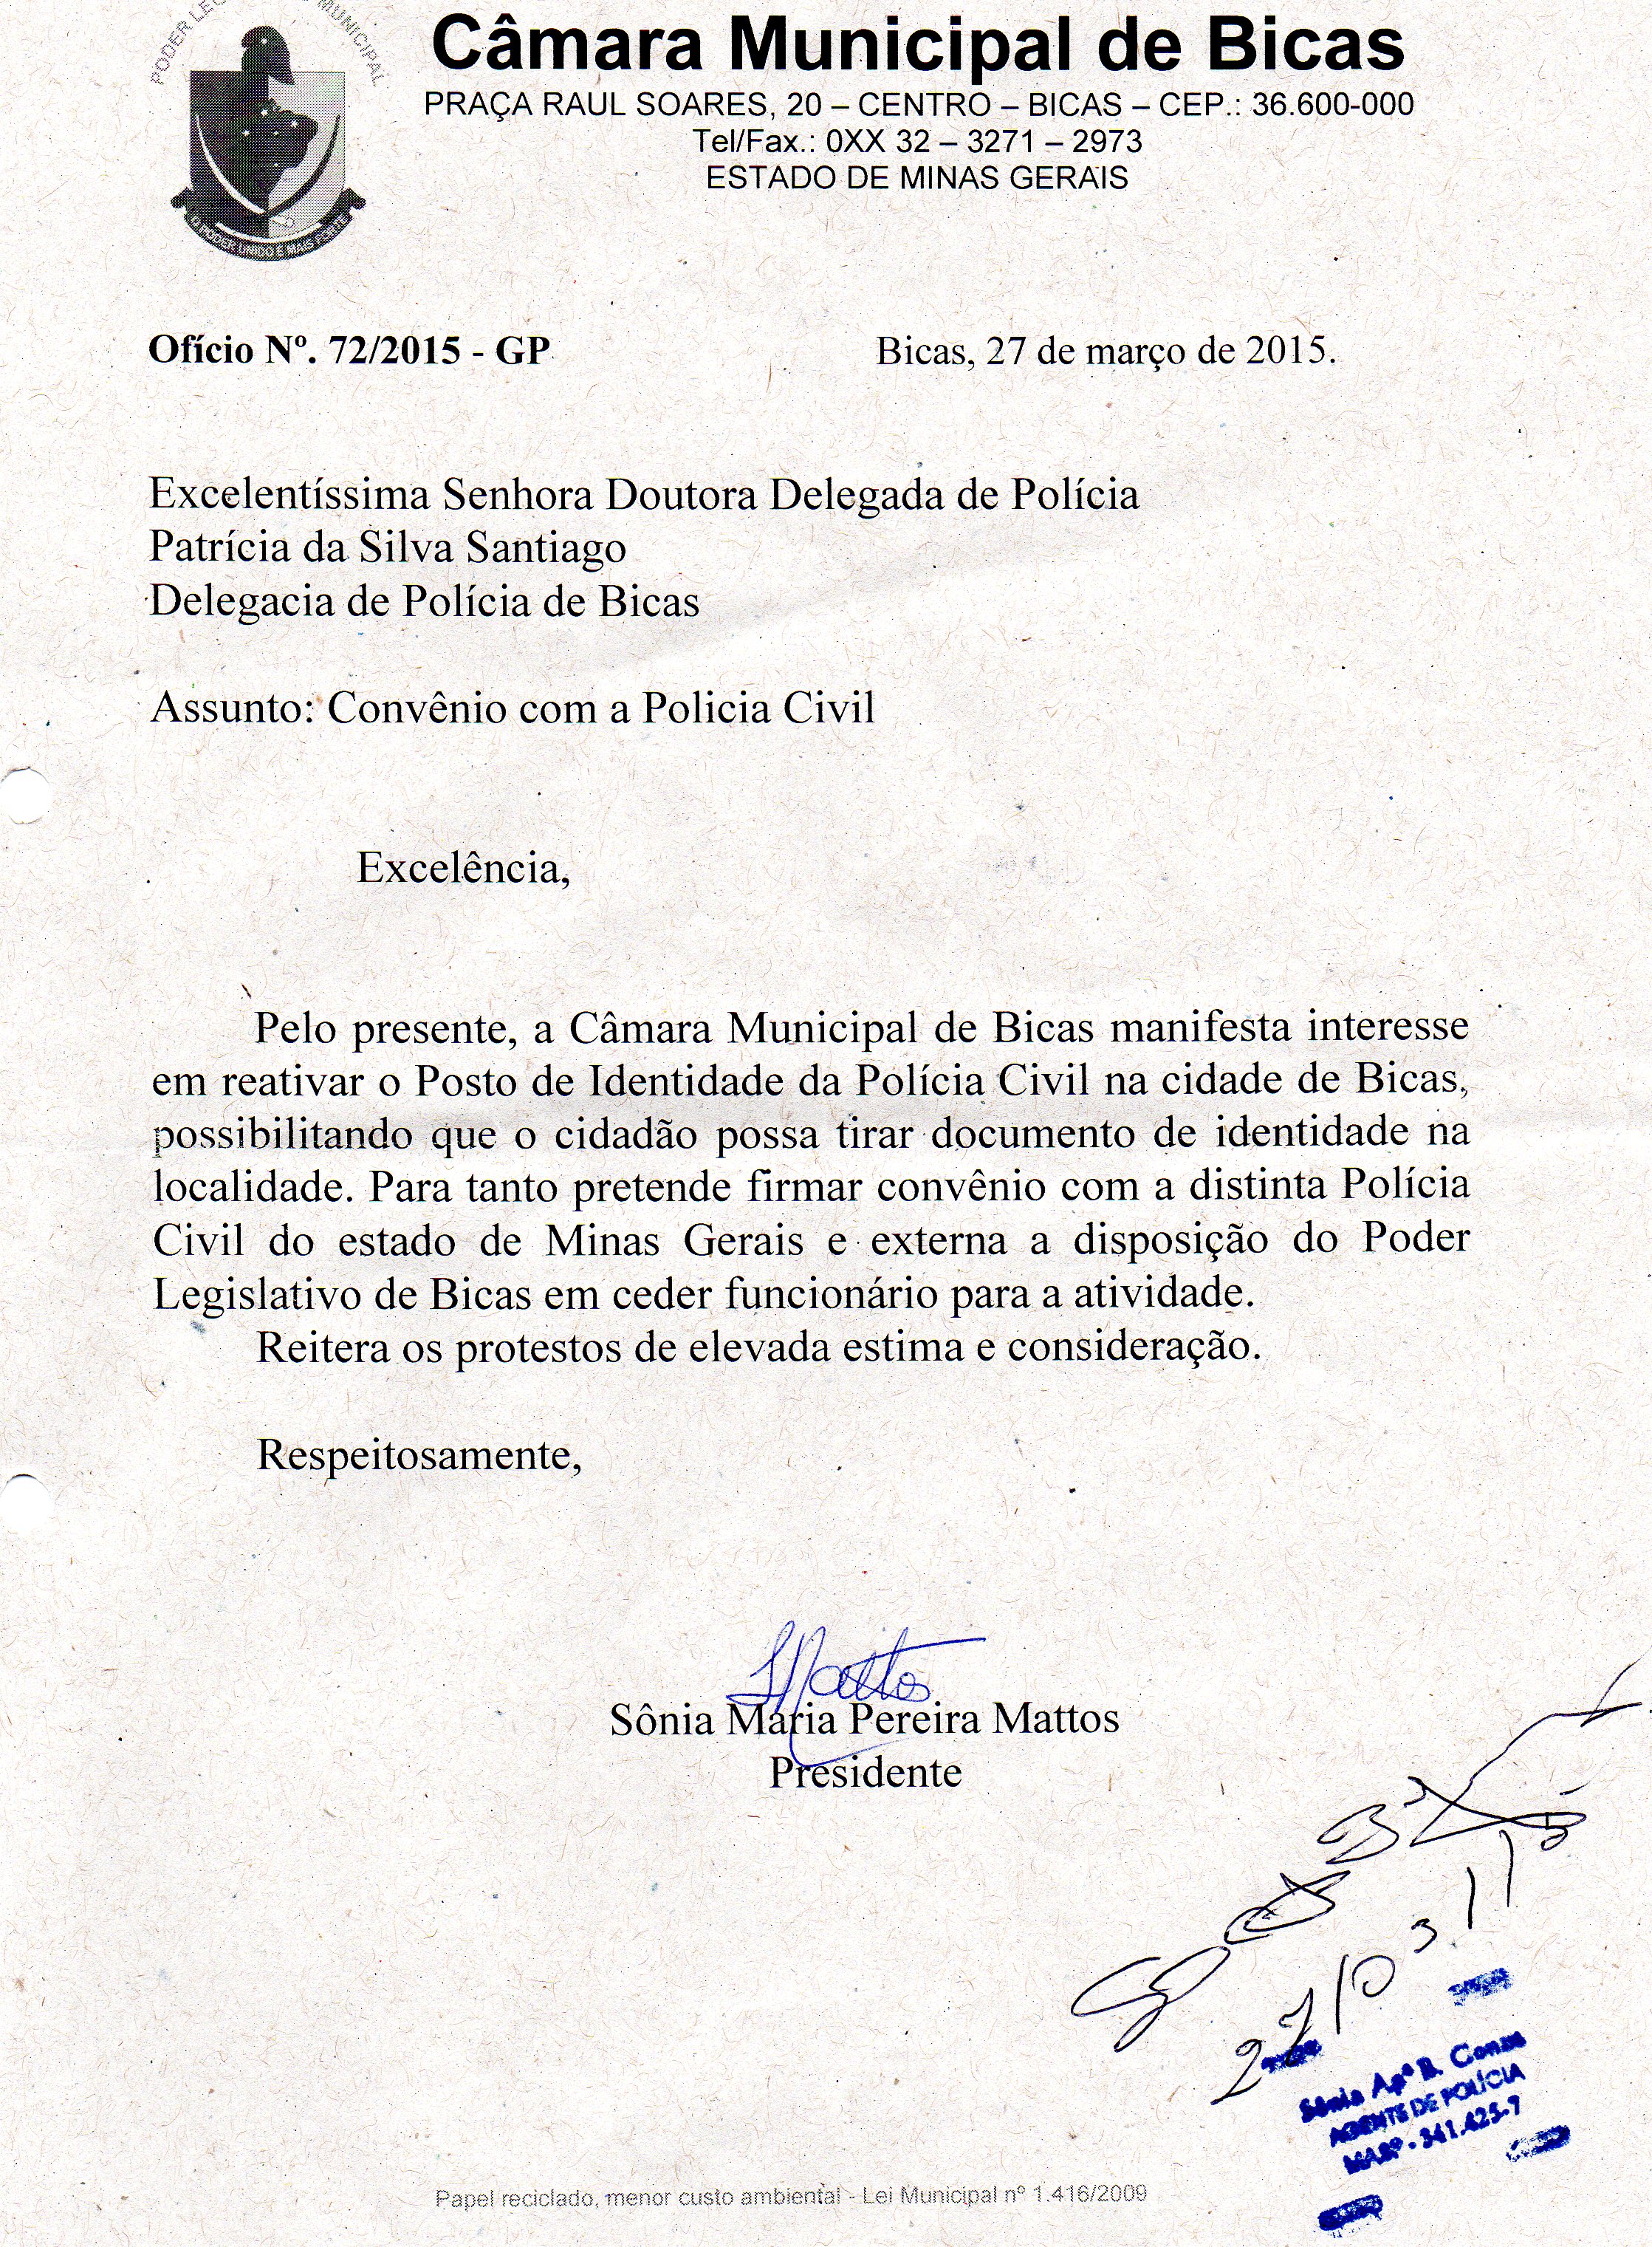 Câmara Municipal de Bicas manifesta interesse em reativar o Posto de Identidade da polícia Civil.